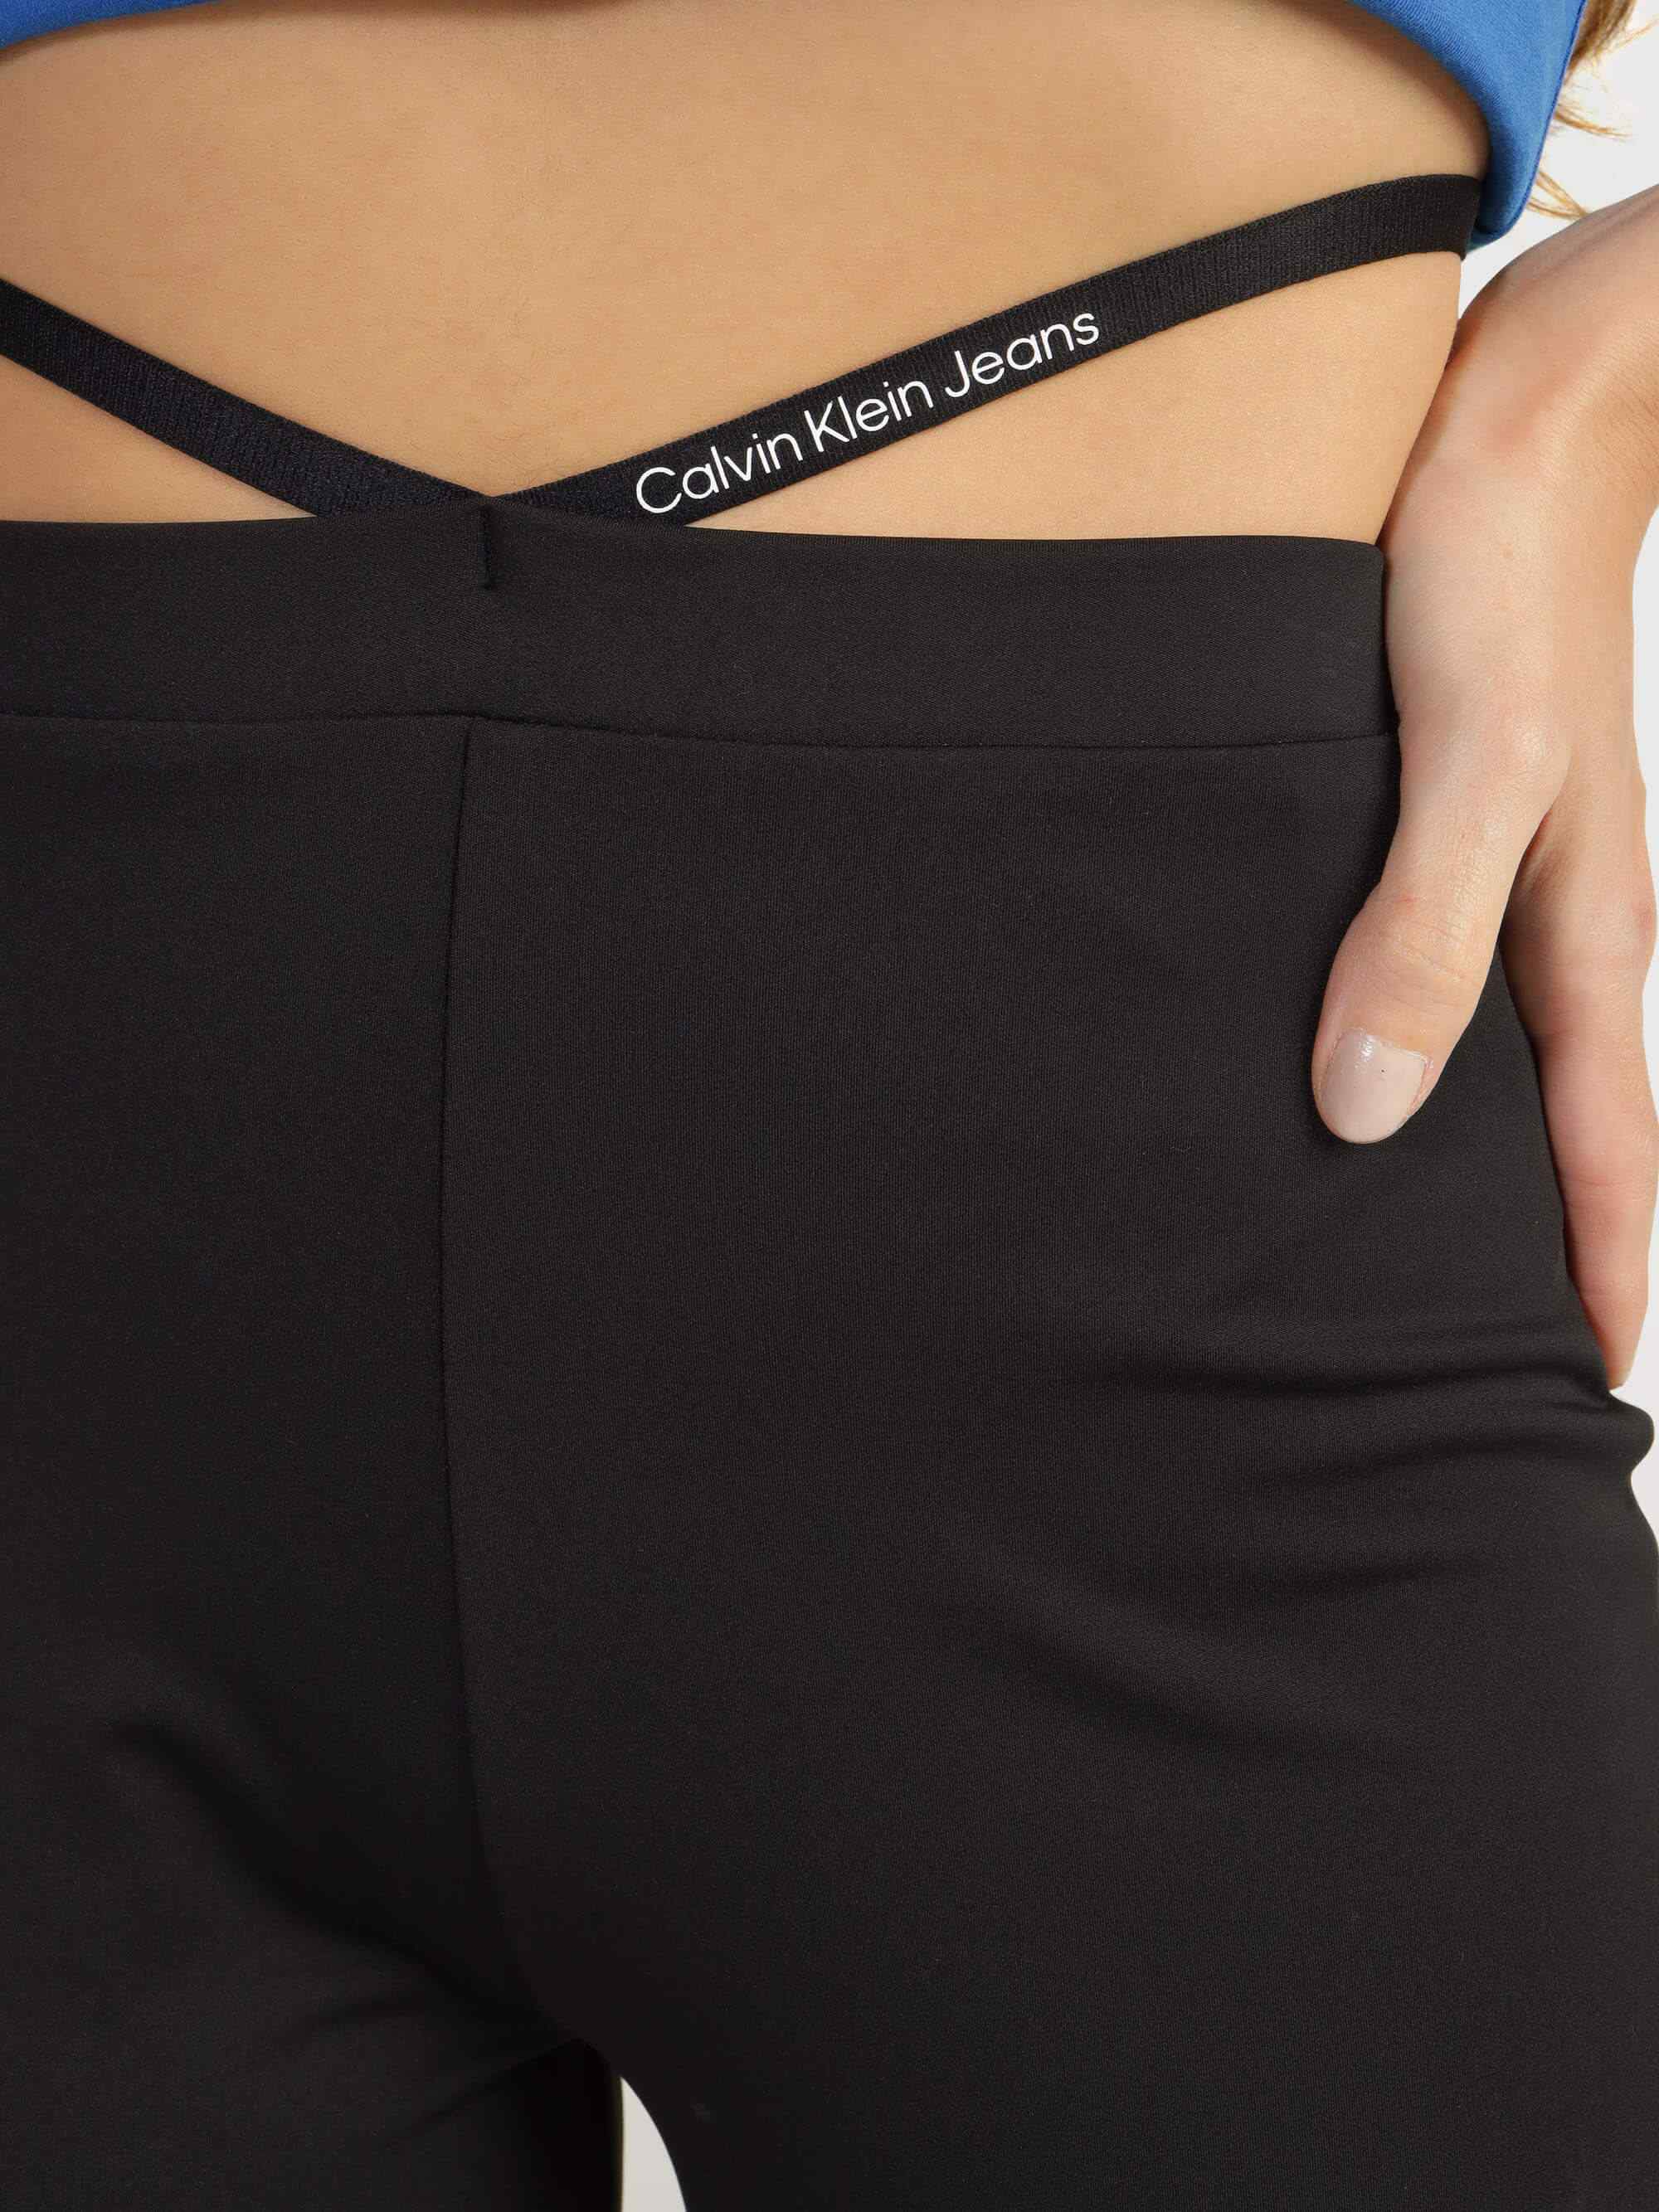 Pantalón Calvin Klein con Cinta Mujer Negro